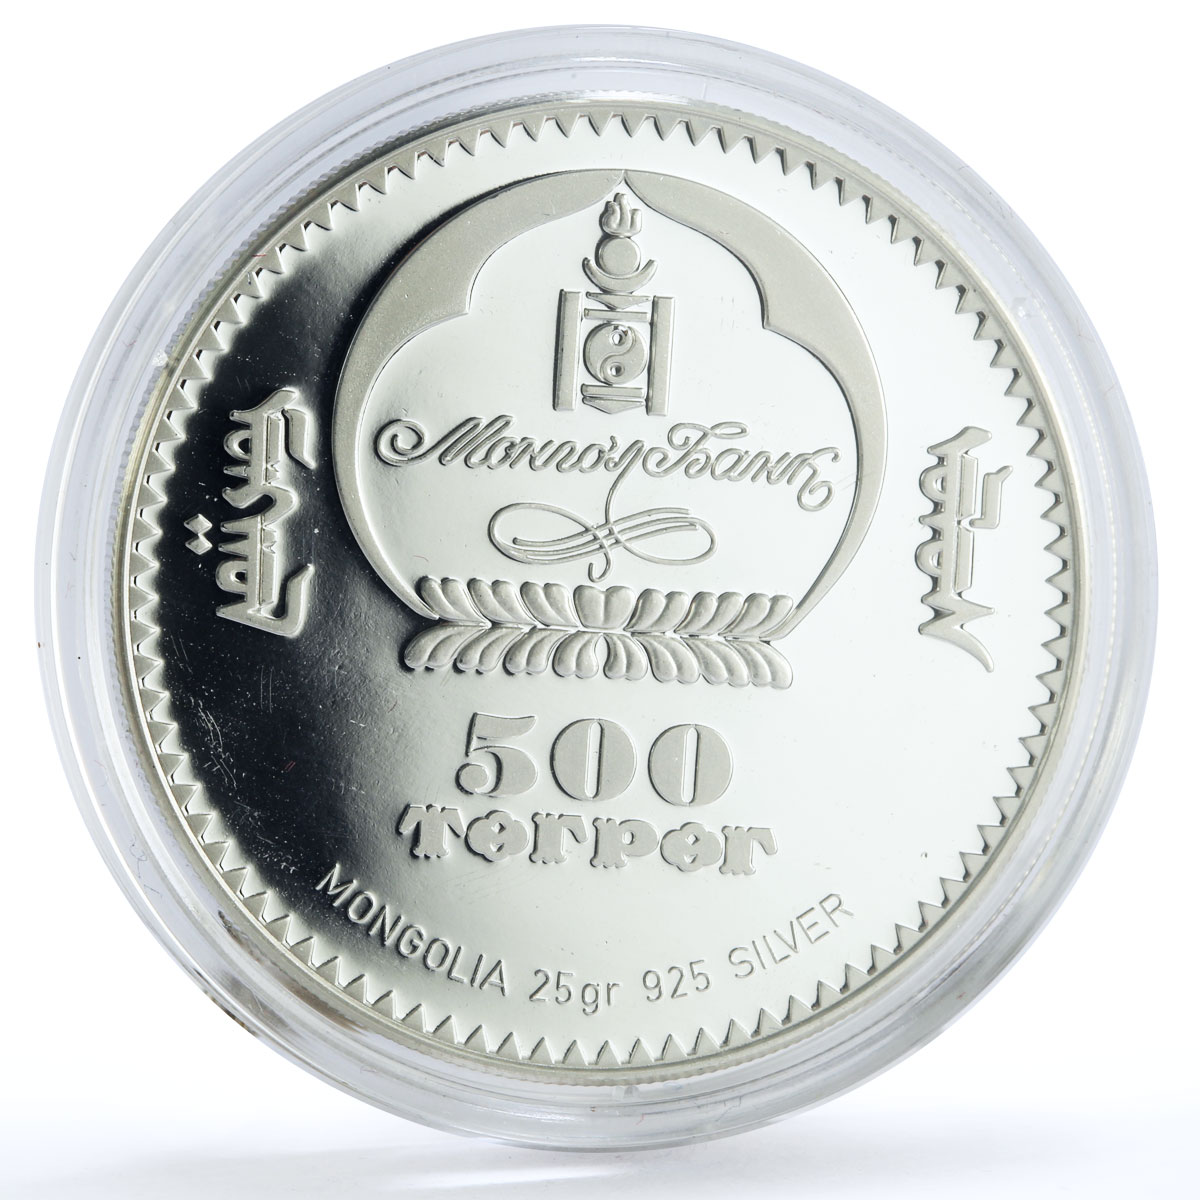 Mongolia 500 togrog 125 Years Gotthard Railways Train Locomotive Ag coin 2007